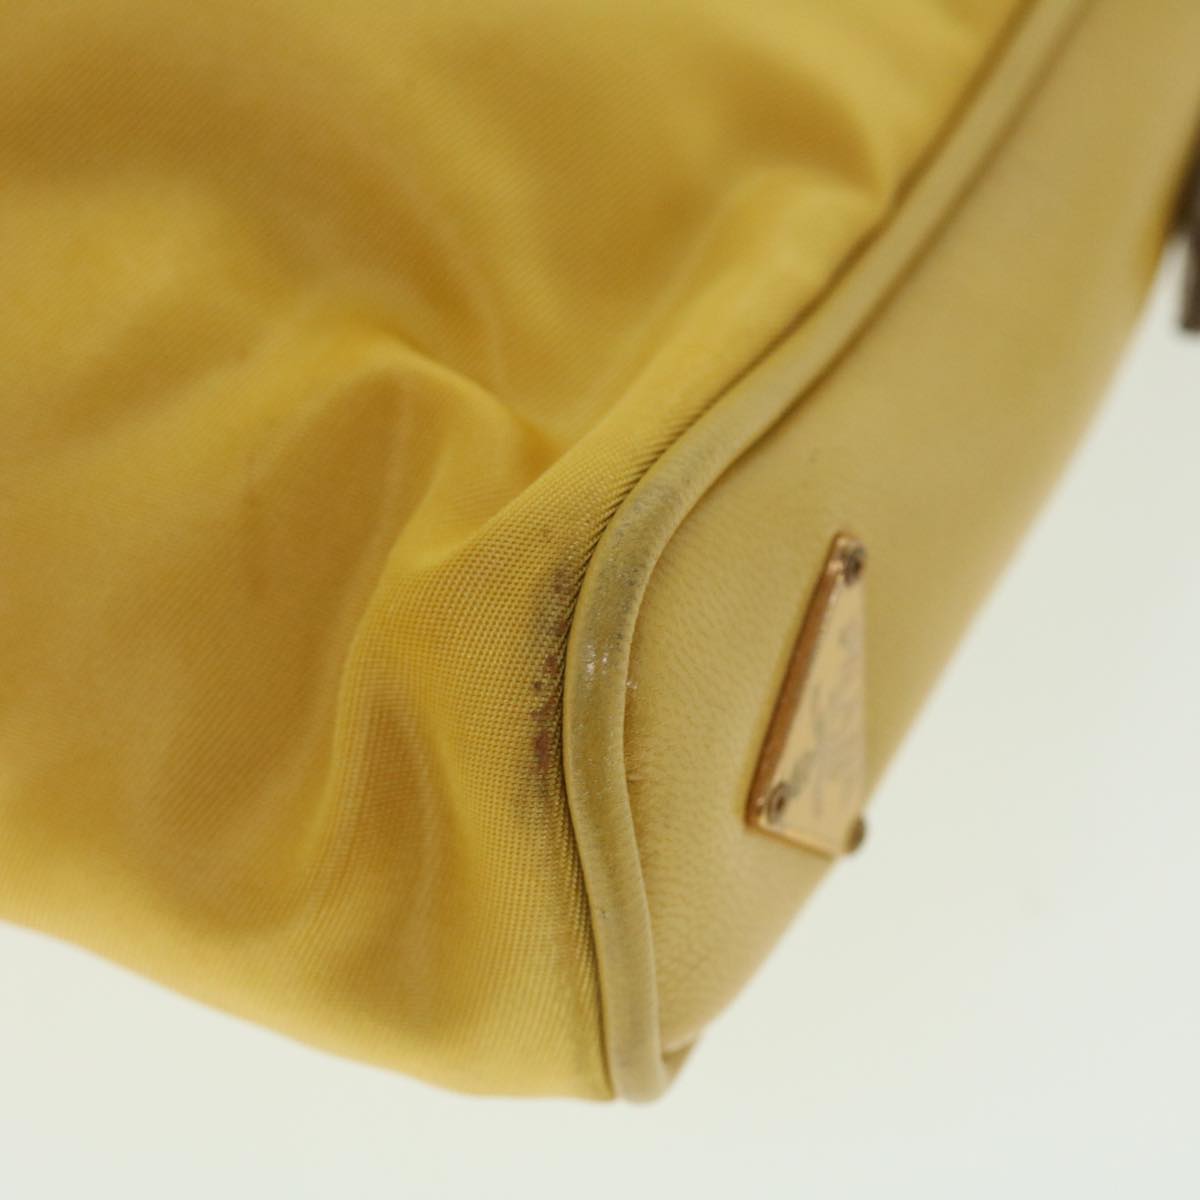 PRADA Hand Bag Nylon Yellow Auth 52243